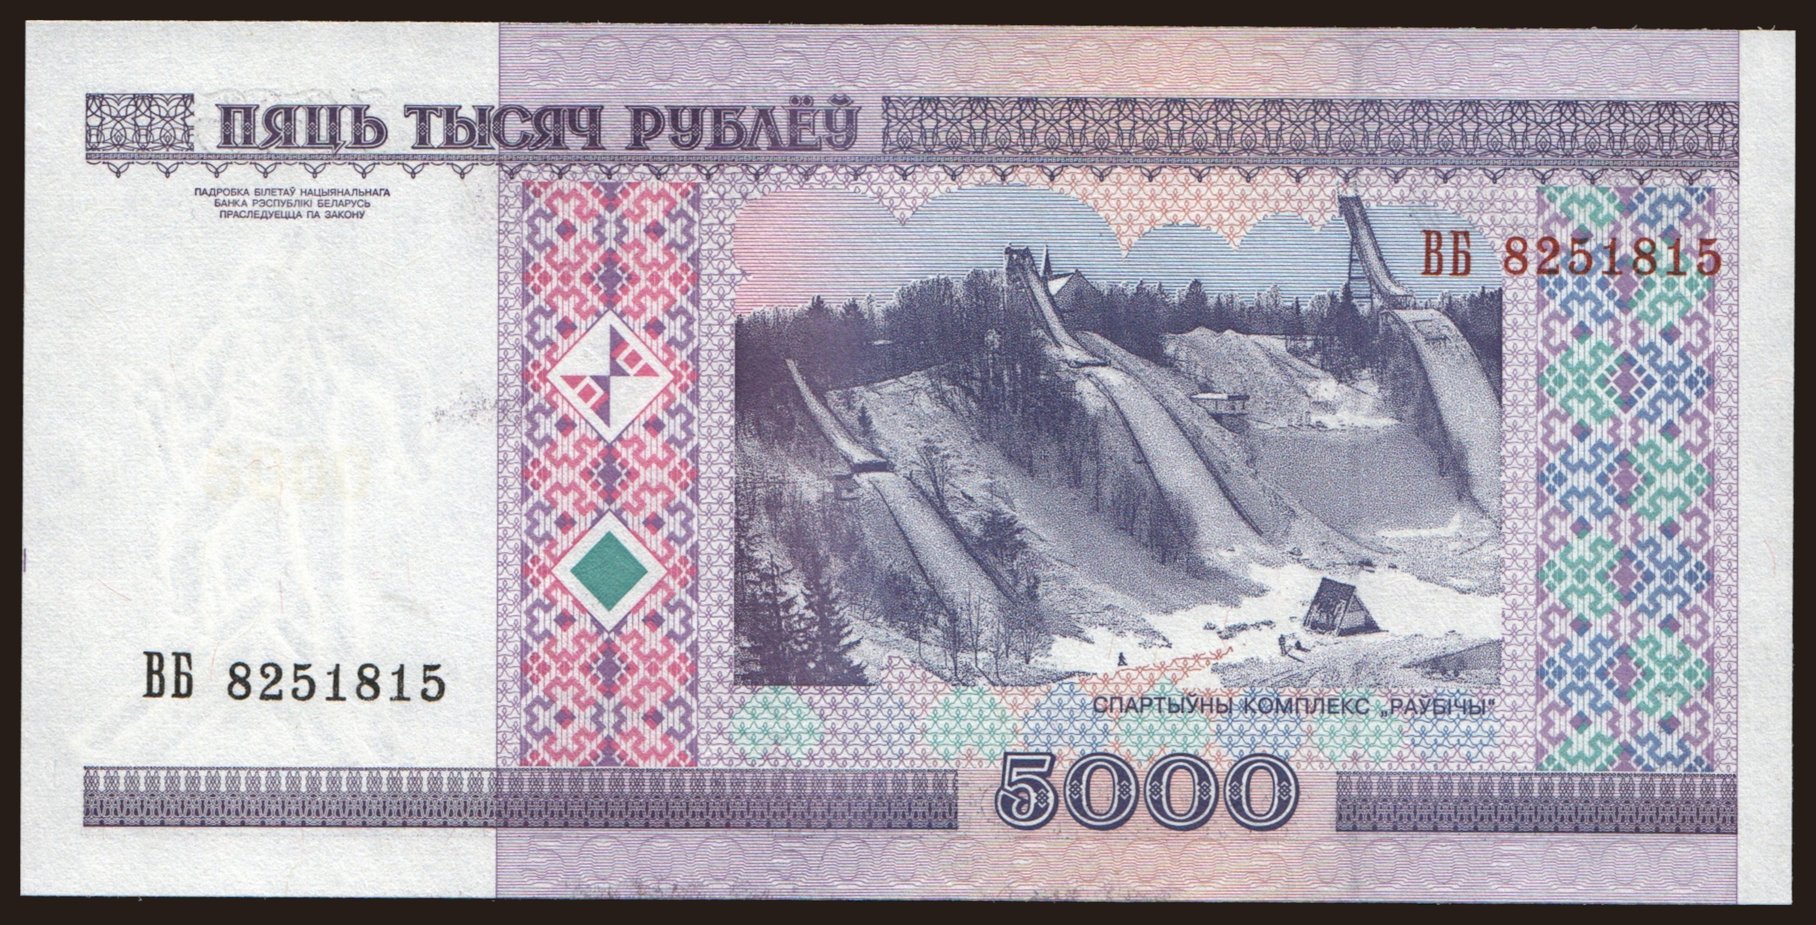 5000 rublei, 2000